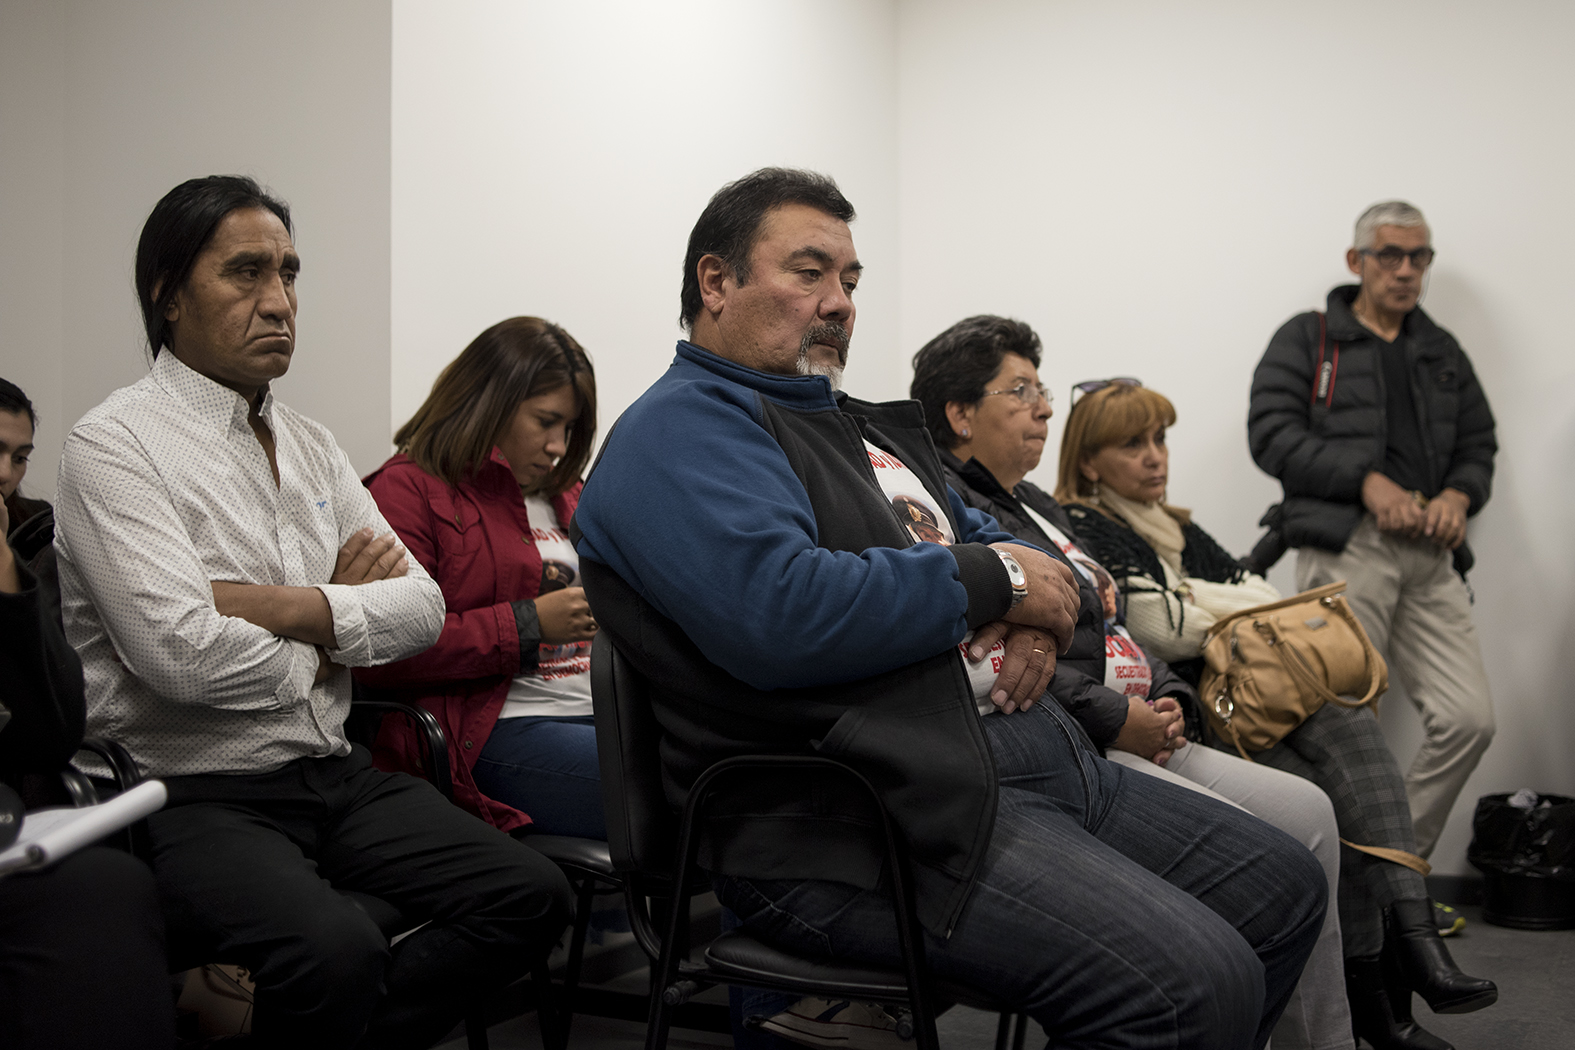 Los padres de Lucas Muñoz, junto a sus hermanos, reclamaron justicia y que el crimen no quede impune en el juicio. Foto: archivo